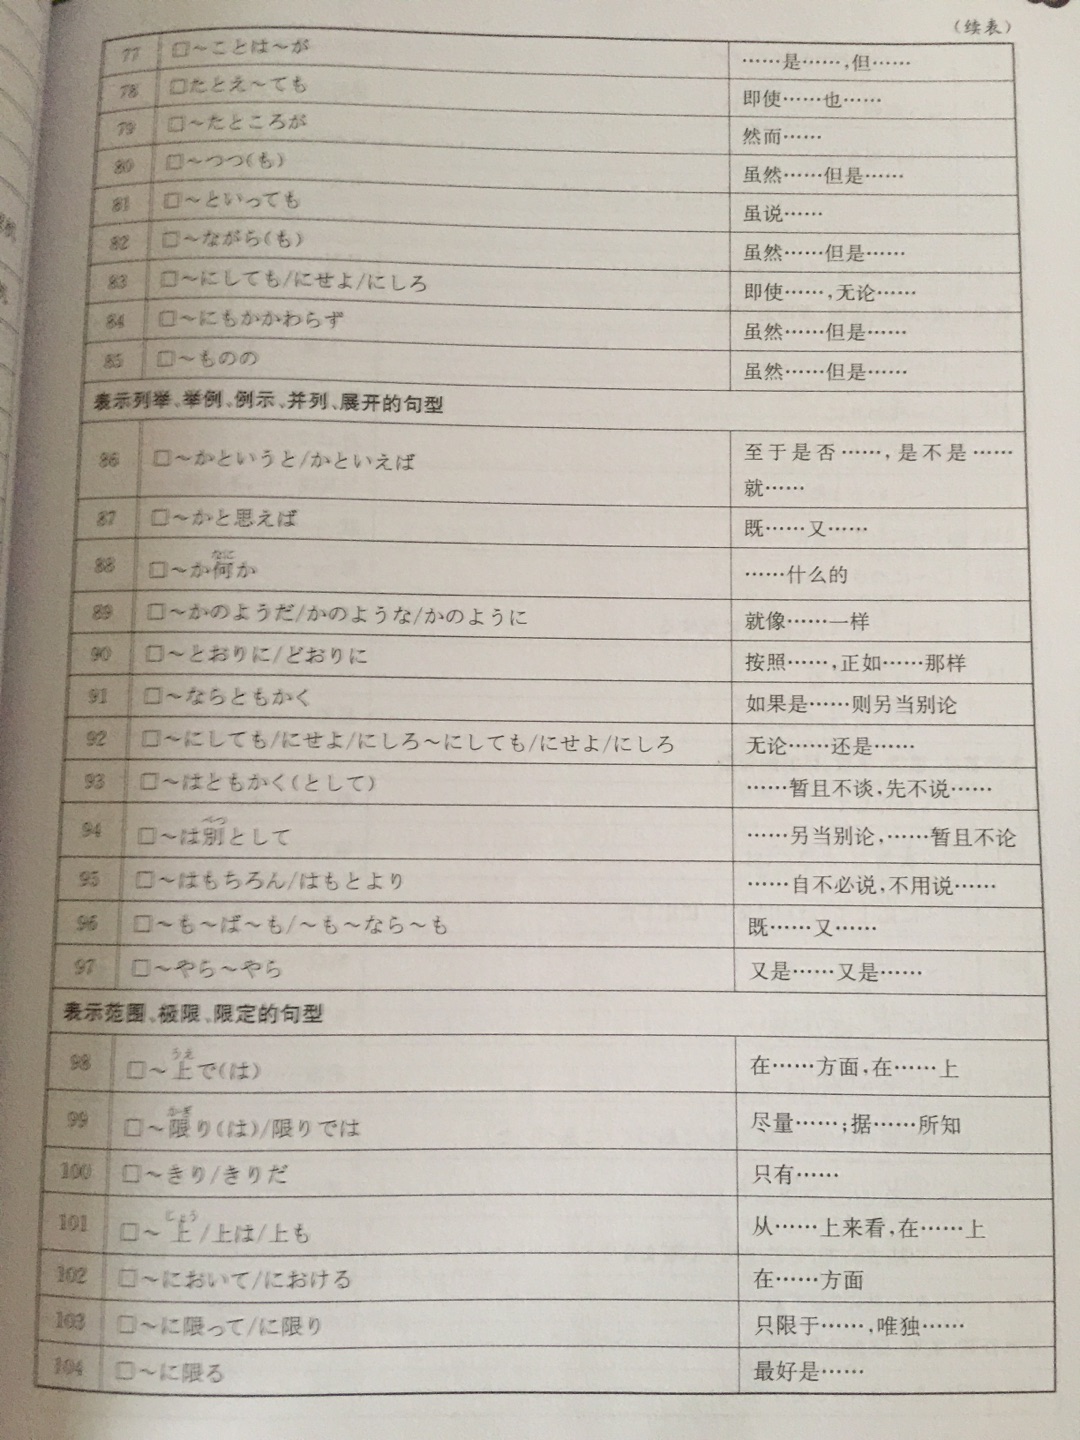 日语文法很重要，熟能生巧，解释很详尽，希望能顺利通过考试。